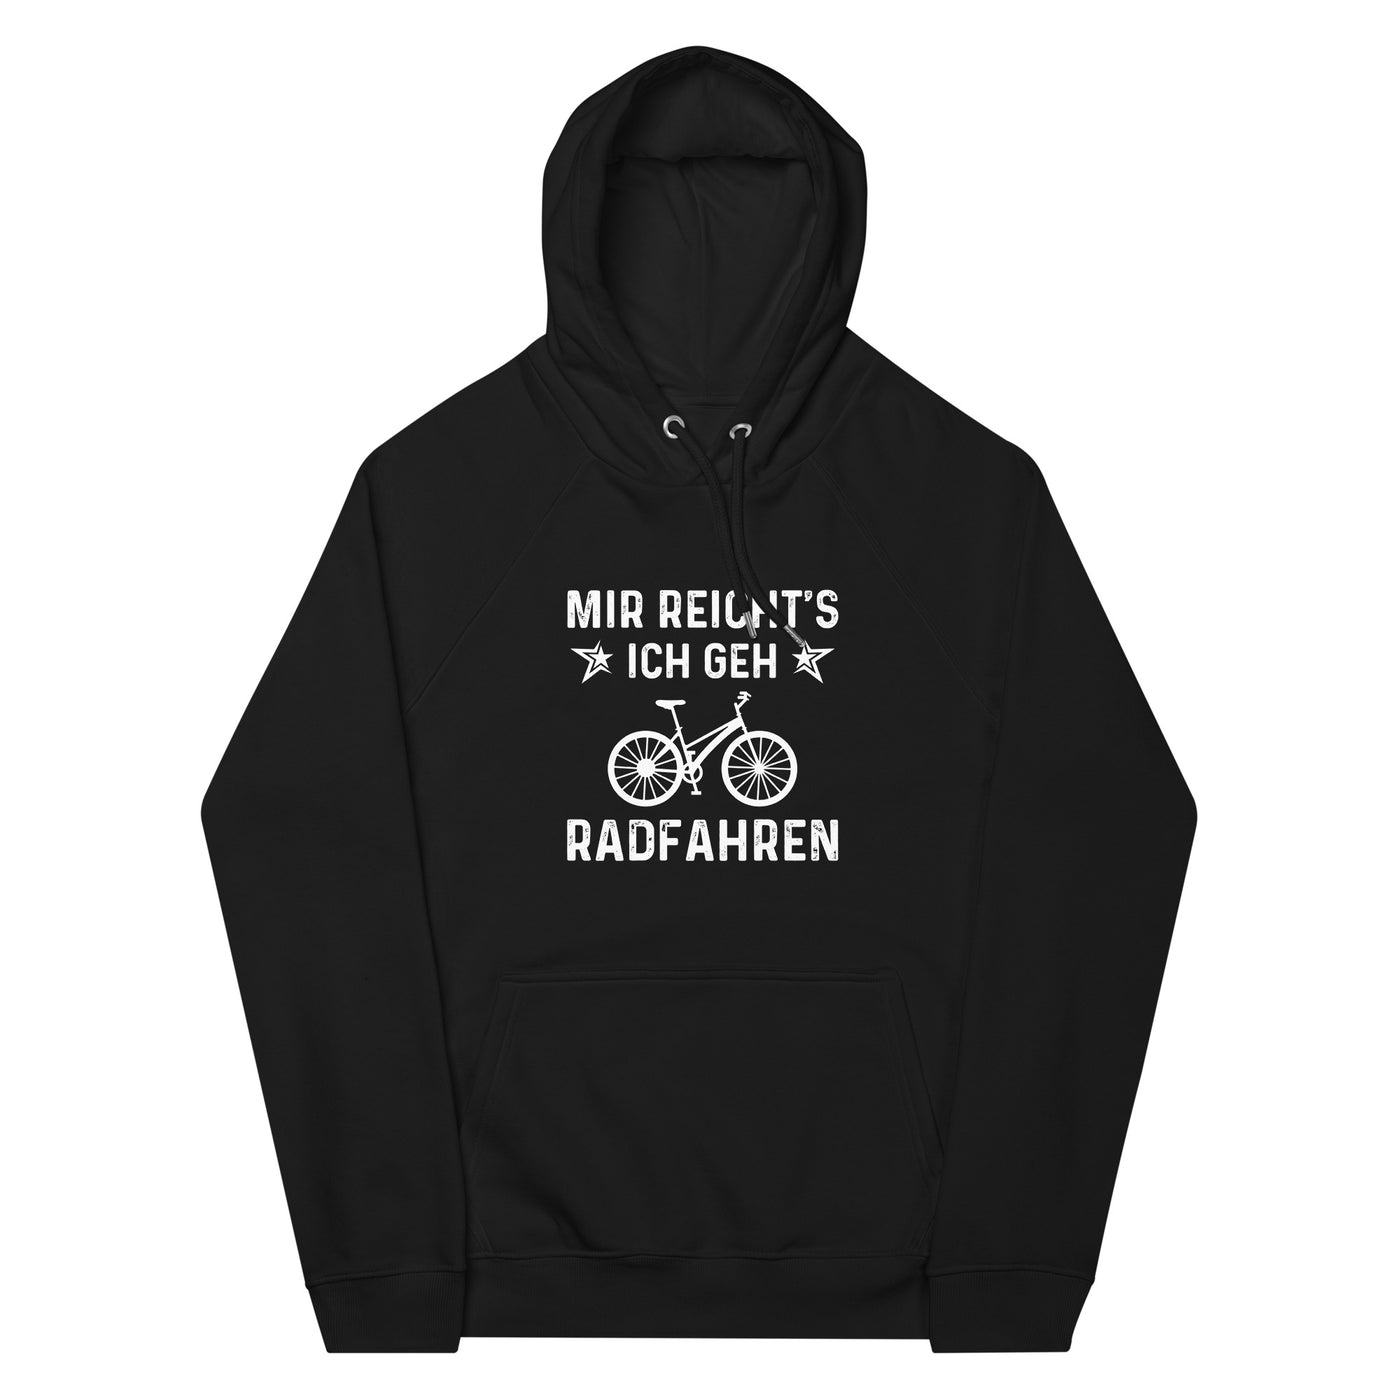 Mir Reicht's Ich Gen Radfahren - Unisex Premium Organic Hoodie fahrrad xxx yyy zzz Black